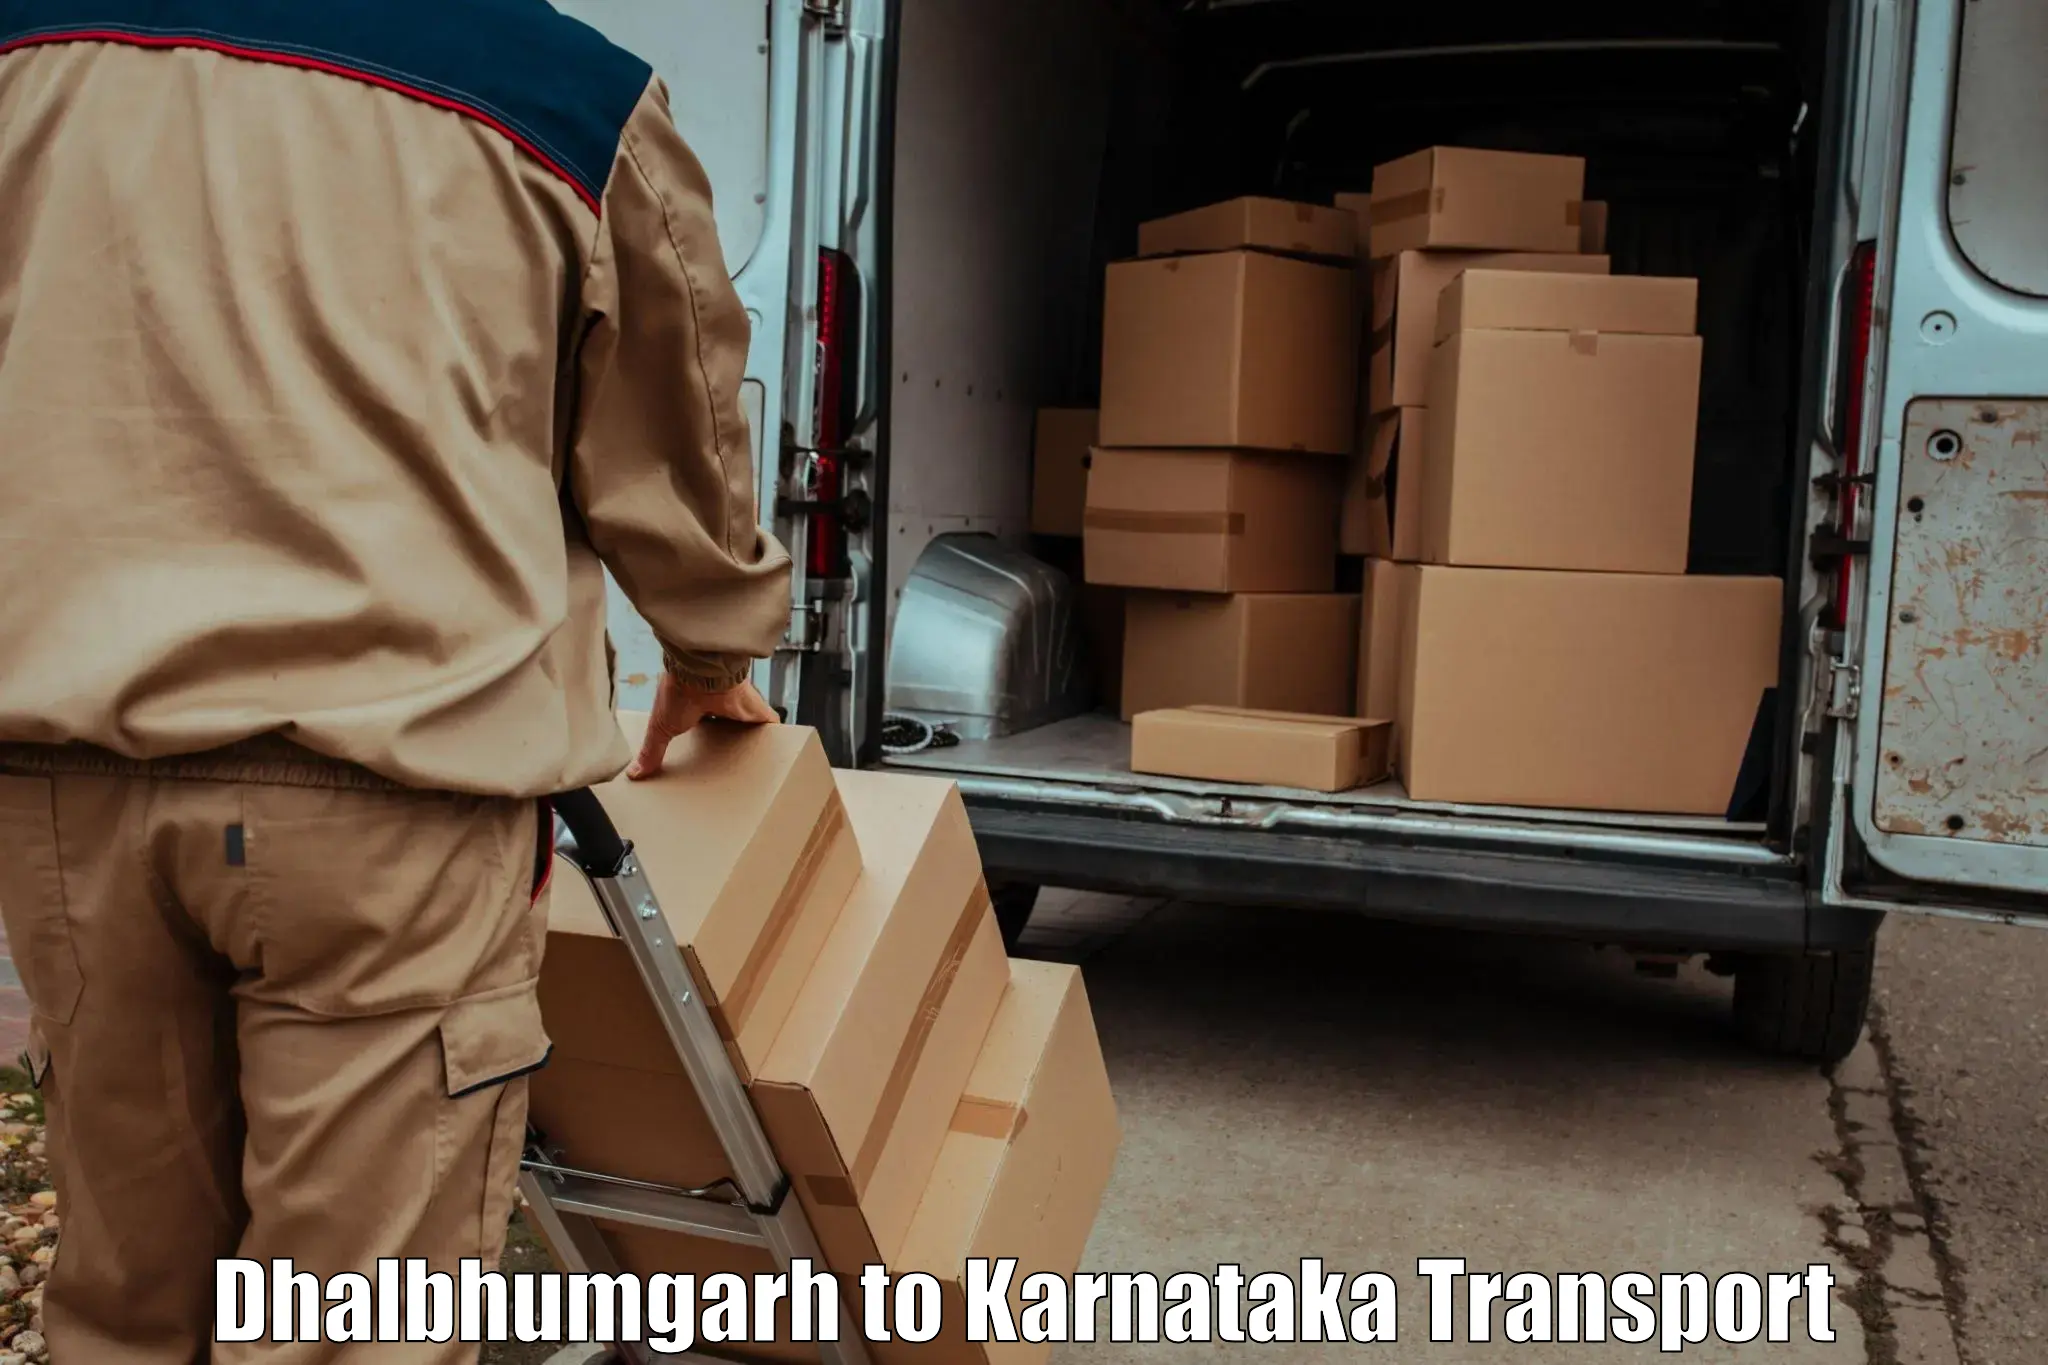 Shipping partner Dhalbhumgarh to Kolar